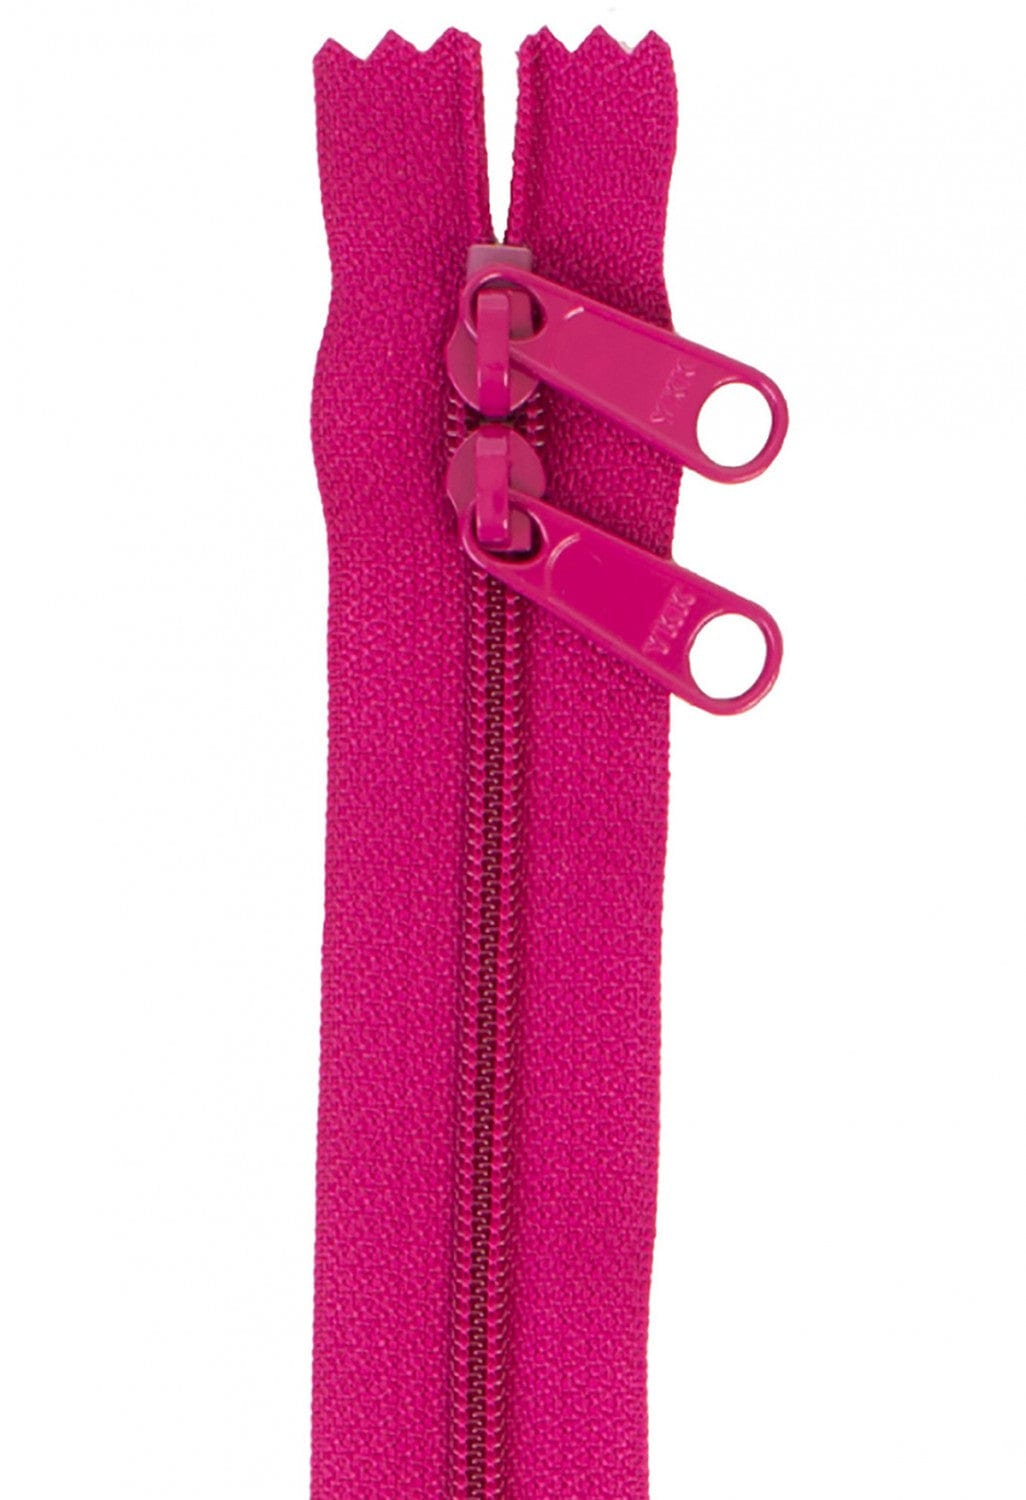 30" Long Double Slide Handbag Zipper in Crazy Plum